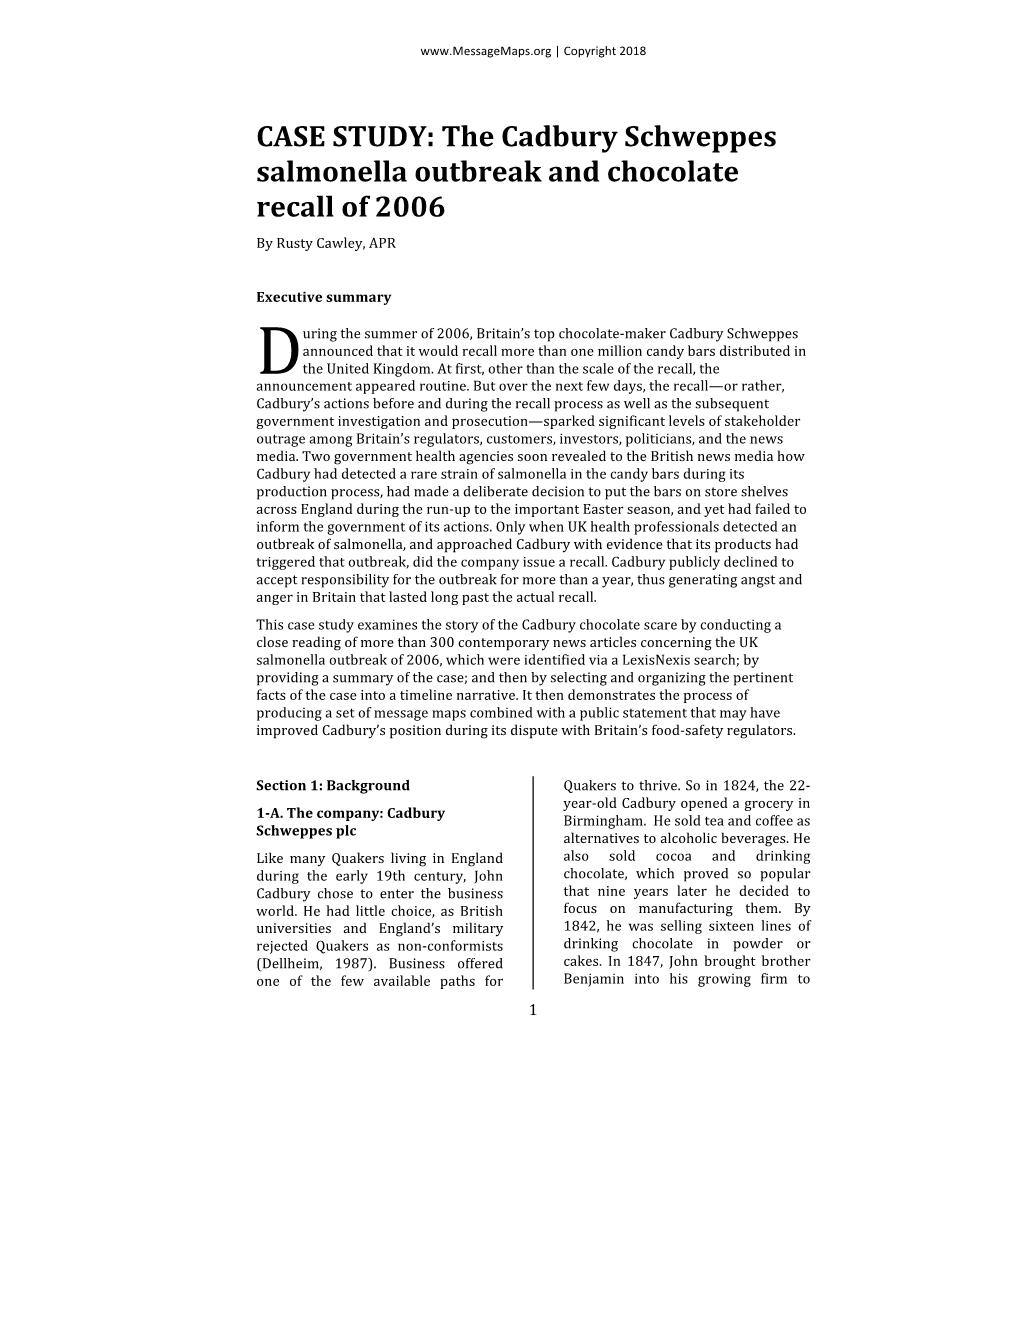 ARTICLE VESION Cadbury Case Study Online Version 5.12.18